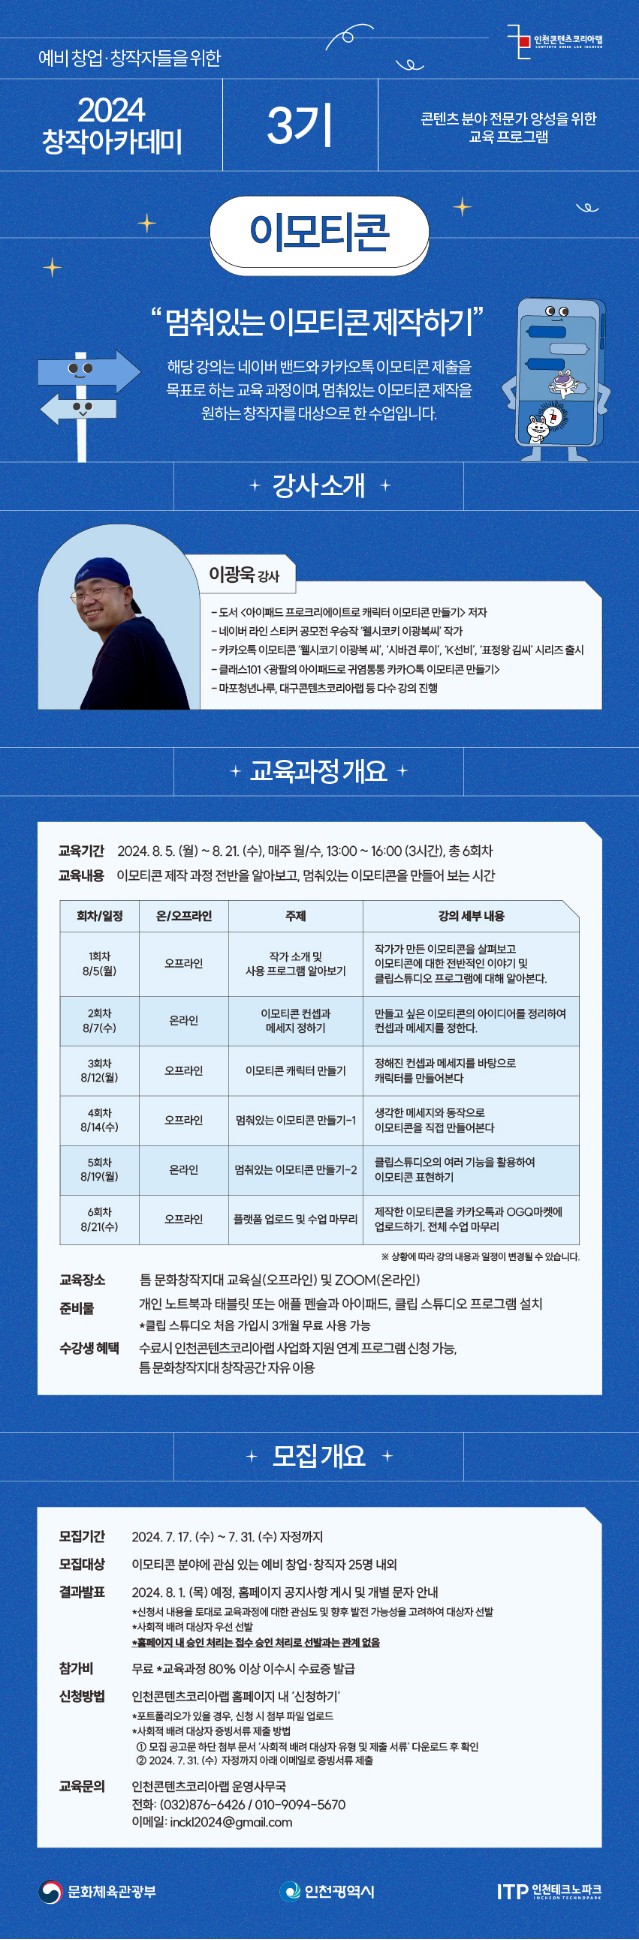 인천콘텐츠코리아랩 '2024 창작 아카데미 3기 - 이모티콘 과정' 수강생 모집